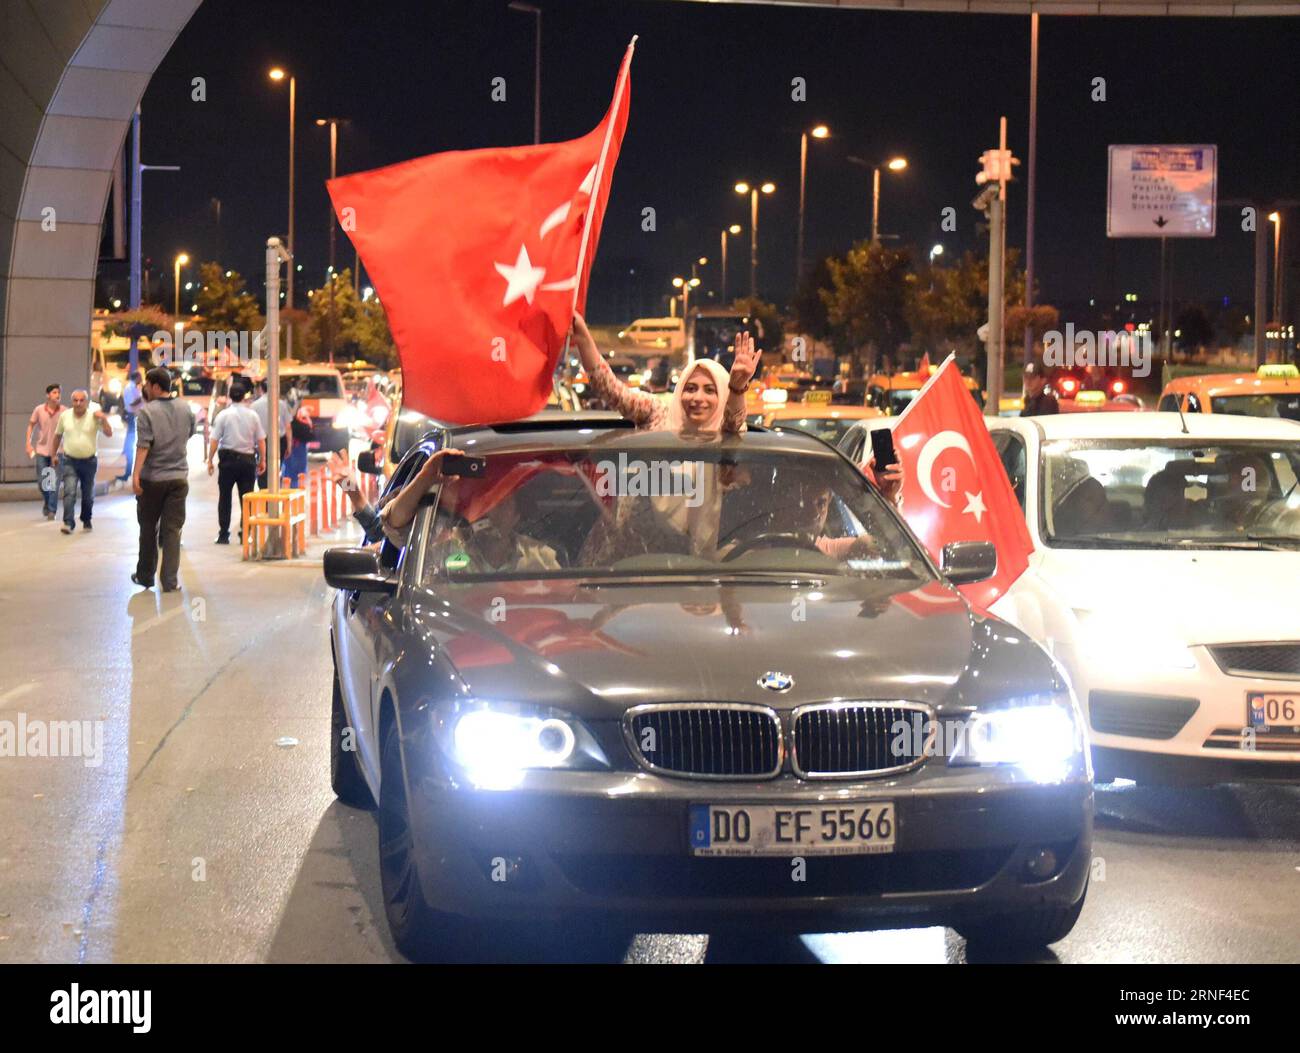 (160718) -- ISTANBUL, 17 luglio 2016 -- le persone sventolano bandiere turche mentre si dirigono verso una manifestazione a sostegno del presidente turco Recep Tayyip Erdogan all'aeroporto Ataturk di Istanbul, in Turchia, il 17 luglio 2016. Il Ministero degli Esteri turco ha dichiarato in una dichiarazione di domenica che il fallito colpo di stato militare ha lasciato almeno 290 persone uccise e più di 6.000 sono state arrestate finora a causa del loro coinvolgimento nel colpo di stato. ) (nxl) TURCHIA-ISTANBUL-RALLY HexCanling PUBLICATIONxNOTxINxCHN 160718 Istanbul 17 luglio 2016 celebrità ondeggiano bandiere turche mentre si dirigono per un raduno a sostegno del presidente turco Recep Tay Foto Stock